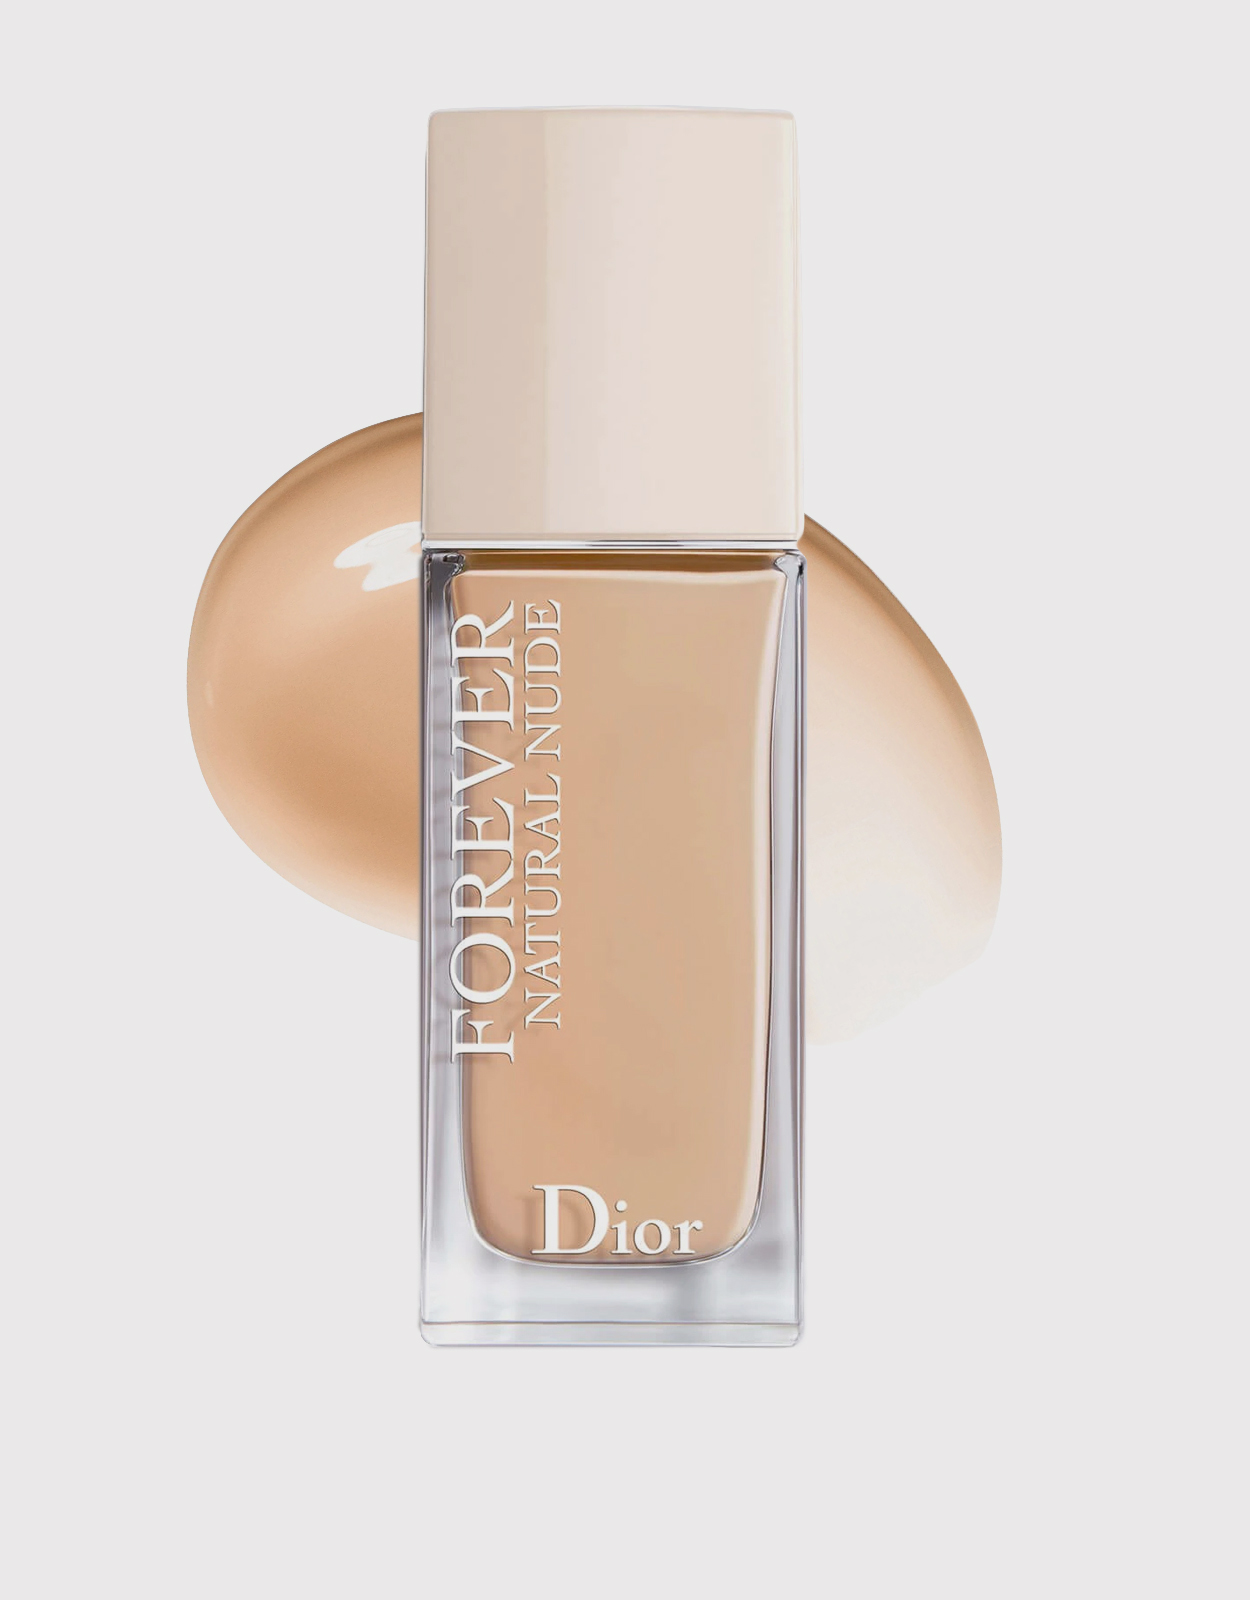 Dior Beauty Dior Forever Nude 2w (Makeup,Face, Foundation) IFCHIC.COM